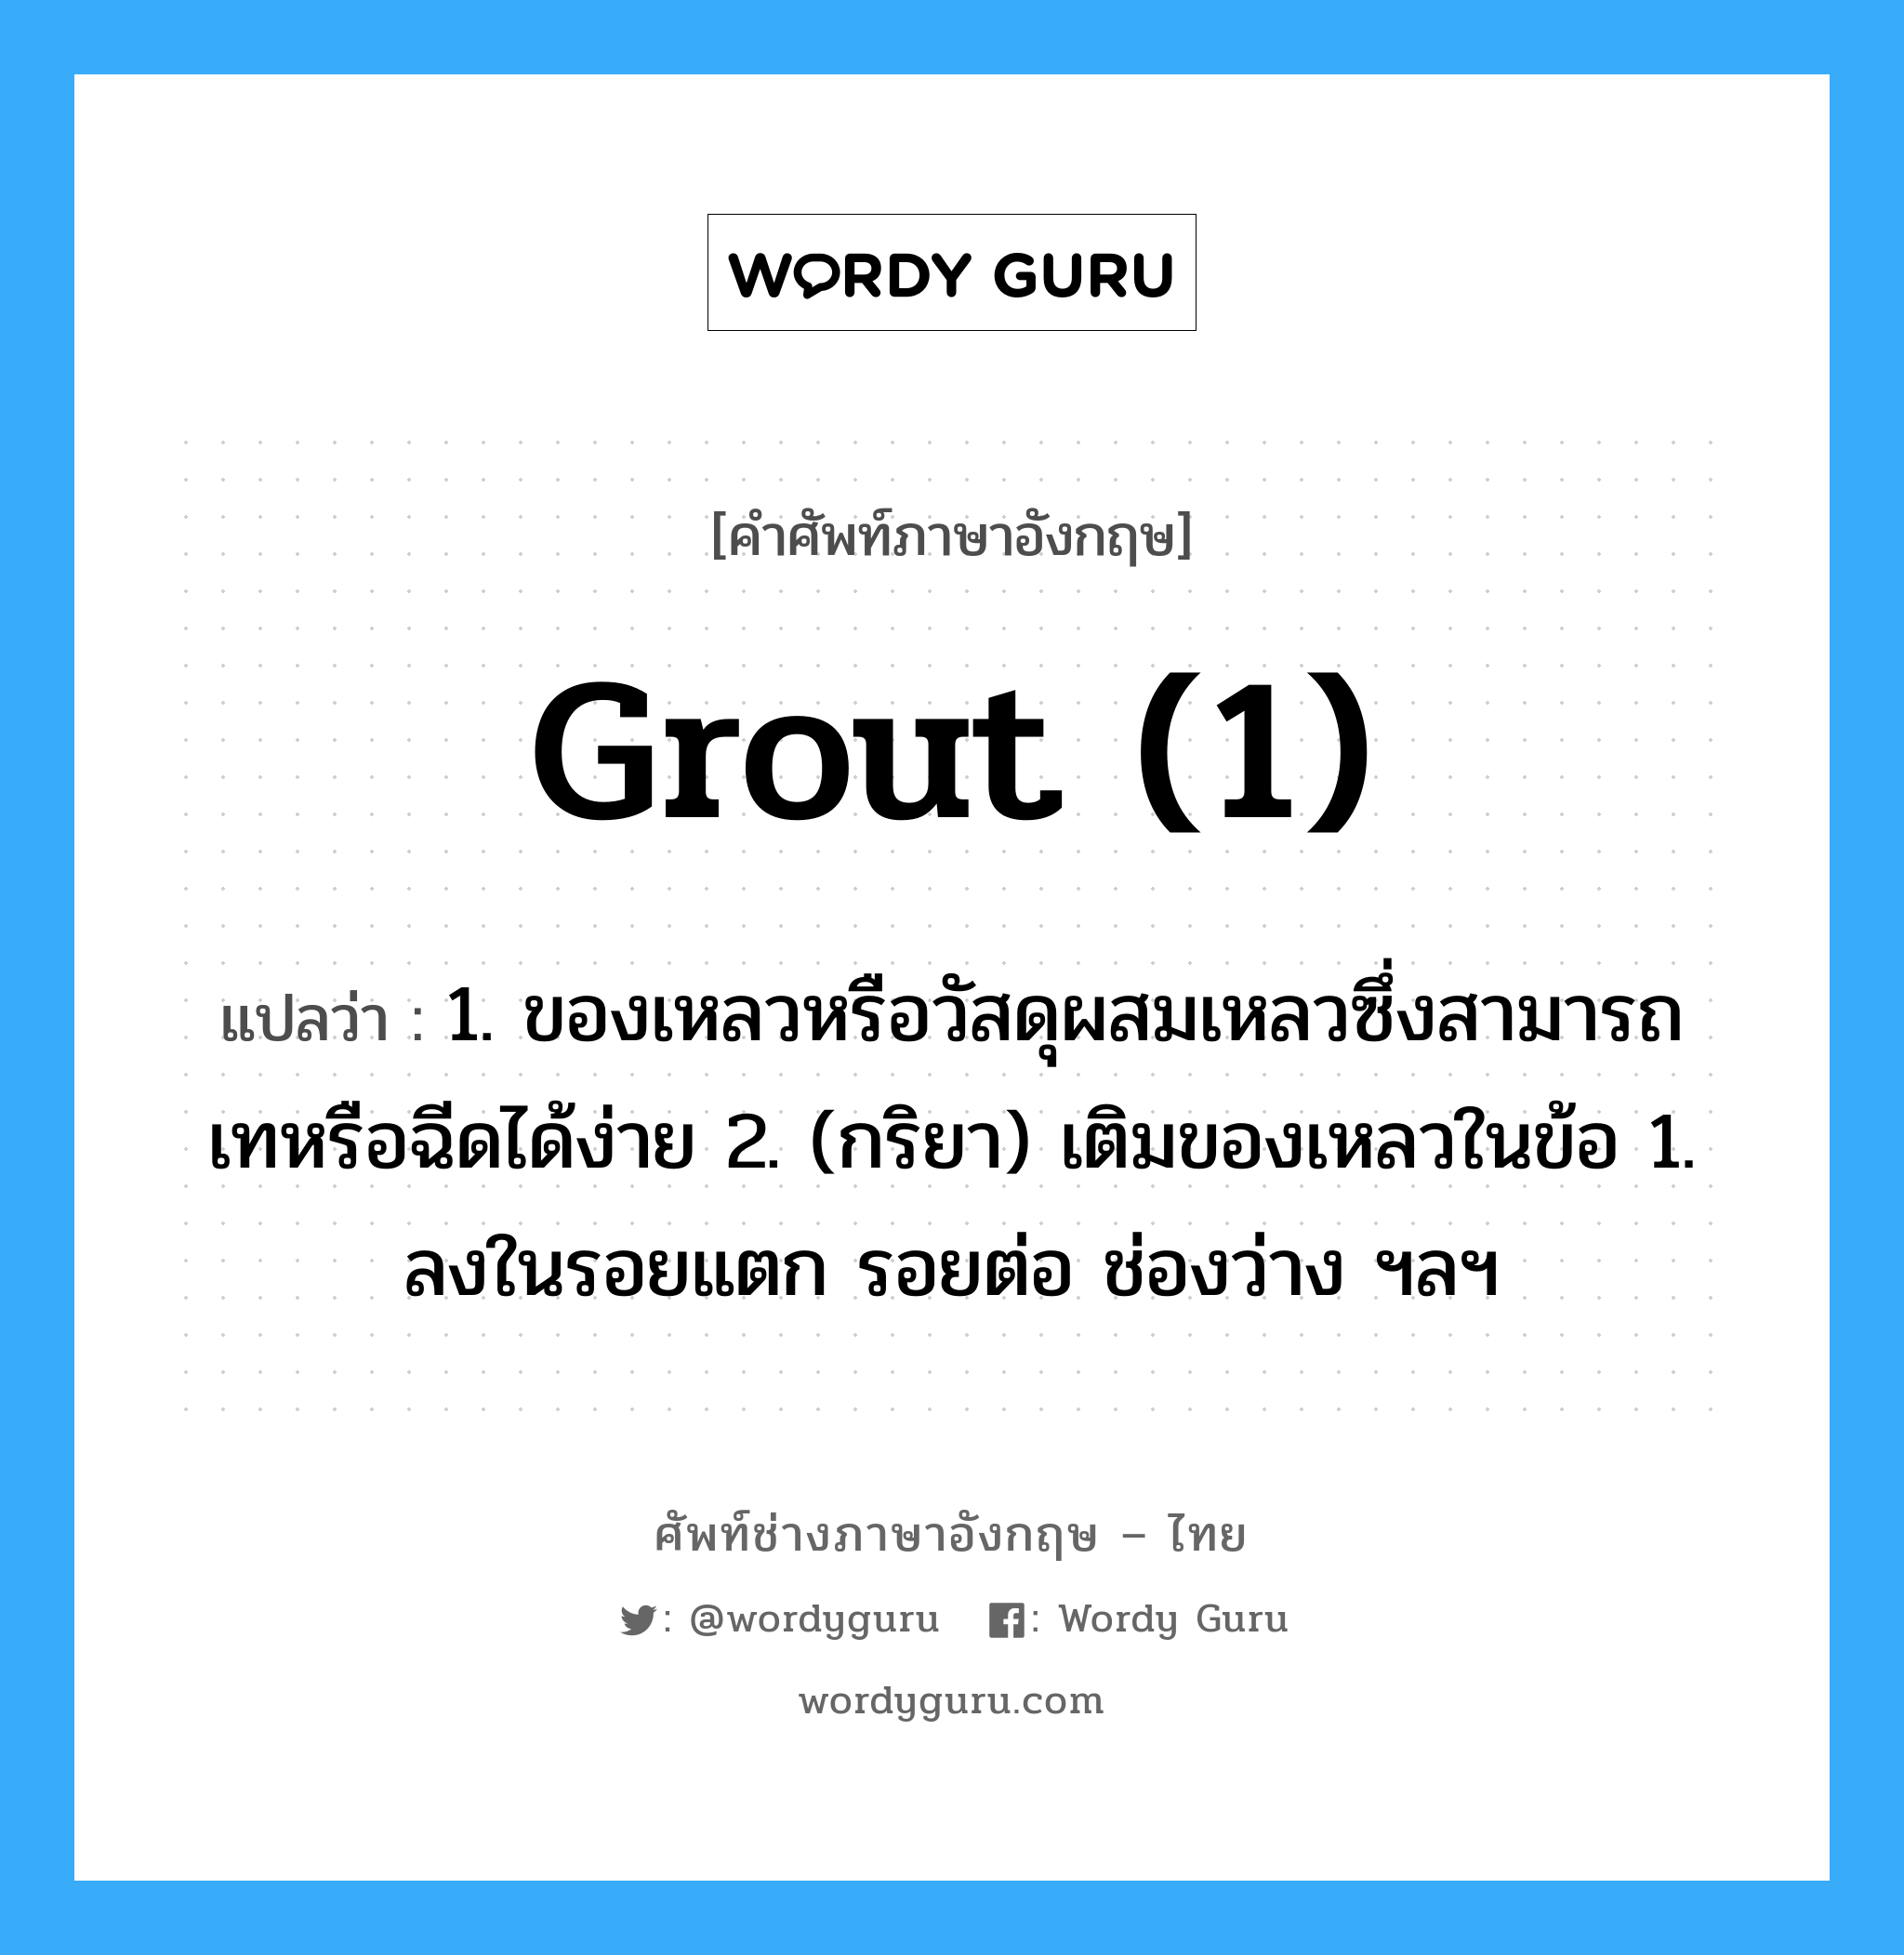 grout (1) แปลว่า?, คำศัพท์ช่างภาษาอังกฤษ - ไทย grout (1) คำศัพท์ภาษาอังกฤษ grout (1) แปลว่า 1. ของเหลวหรือวัสดุผสมเหลวซึ่งสามารถเทหรือฉีดได้ง่าย 2. (กริยา) เติมของเหลวในข้อ 1. ลงในรอยแตก รอยต่อ ช่องว่าง ฯลฯ